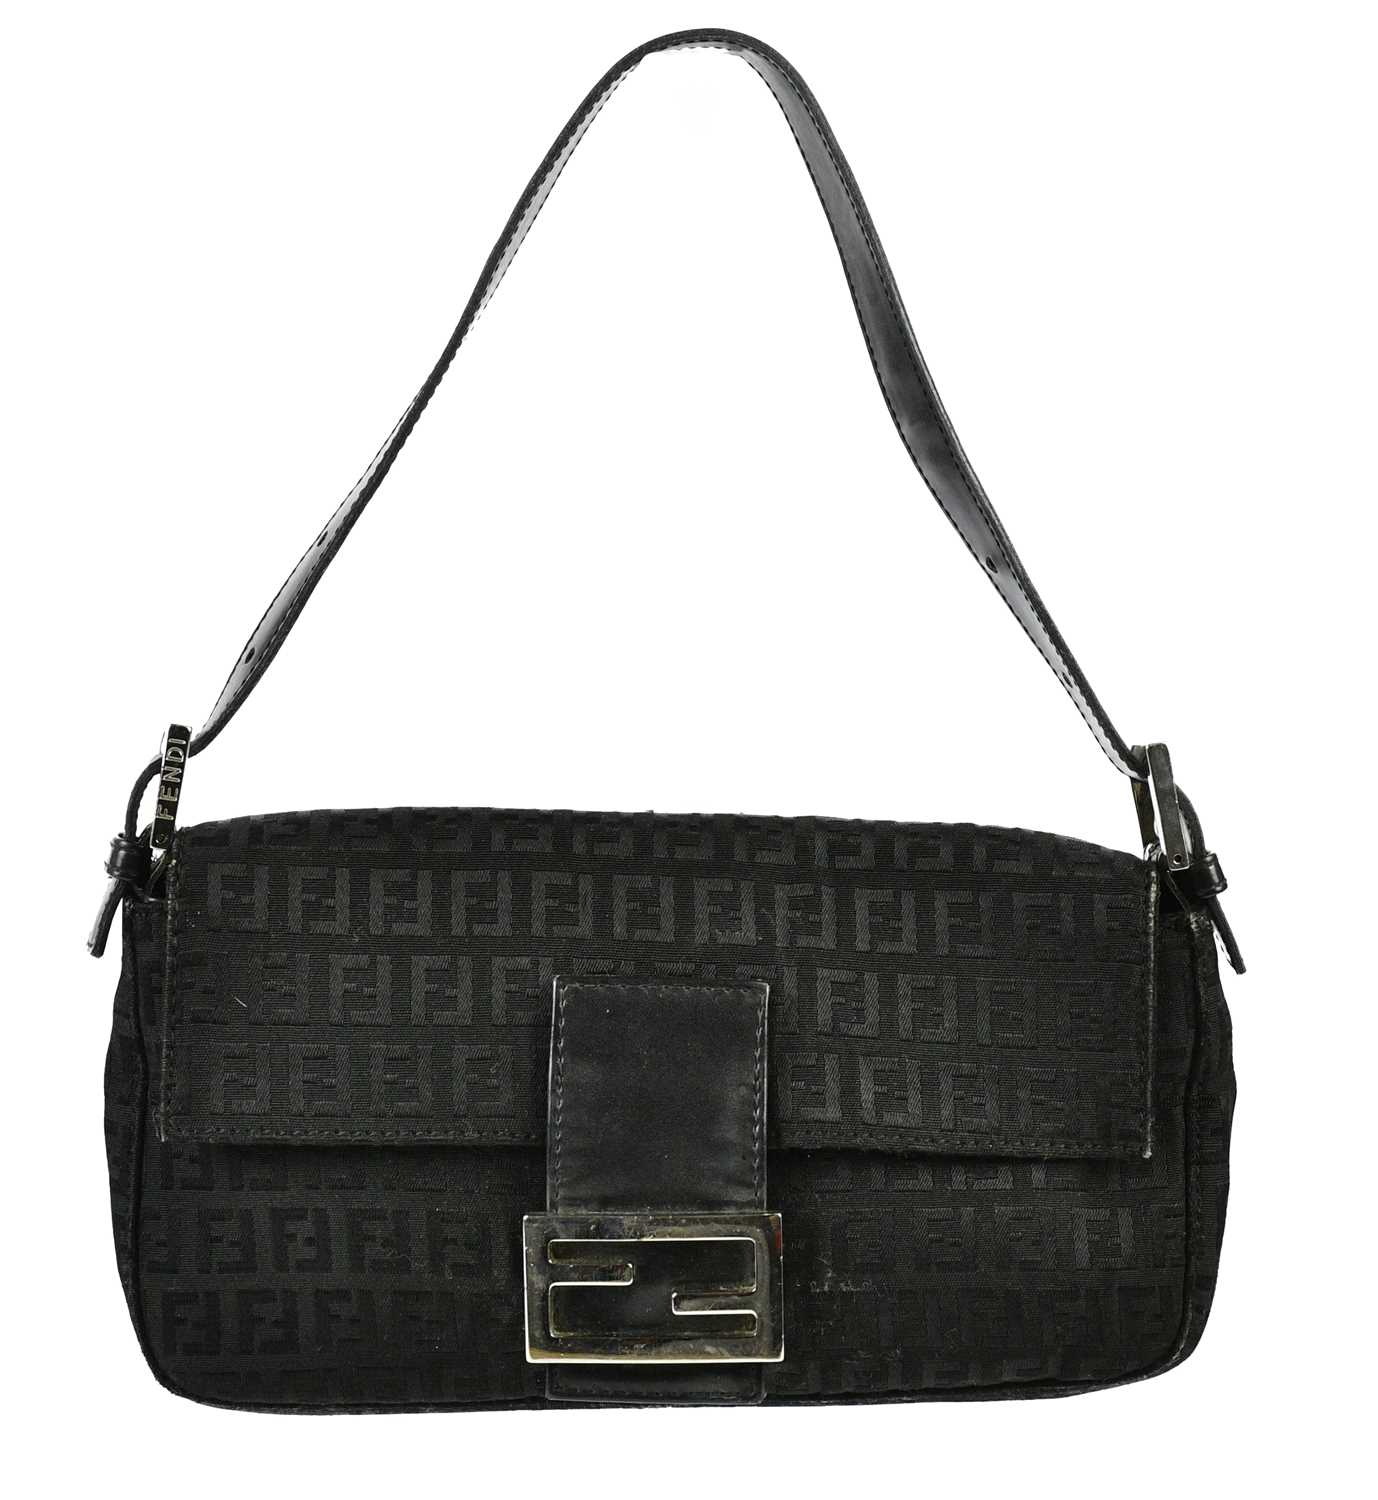 FENDI; a black cloth Mamma Baguette shoulder bag, circa 2000, with adjustable top handle,